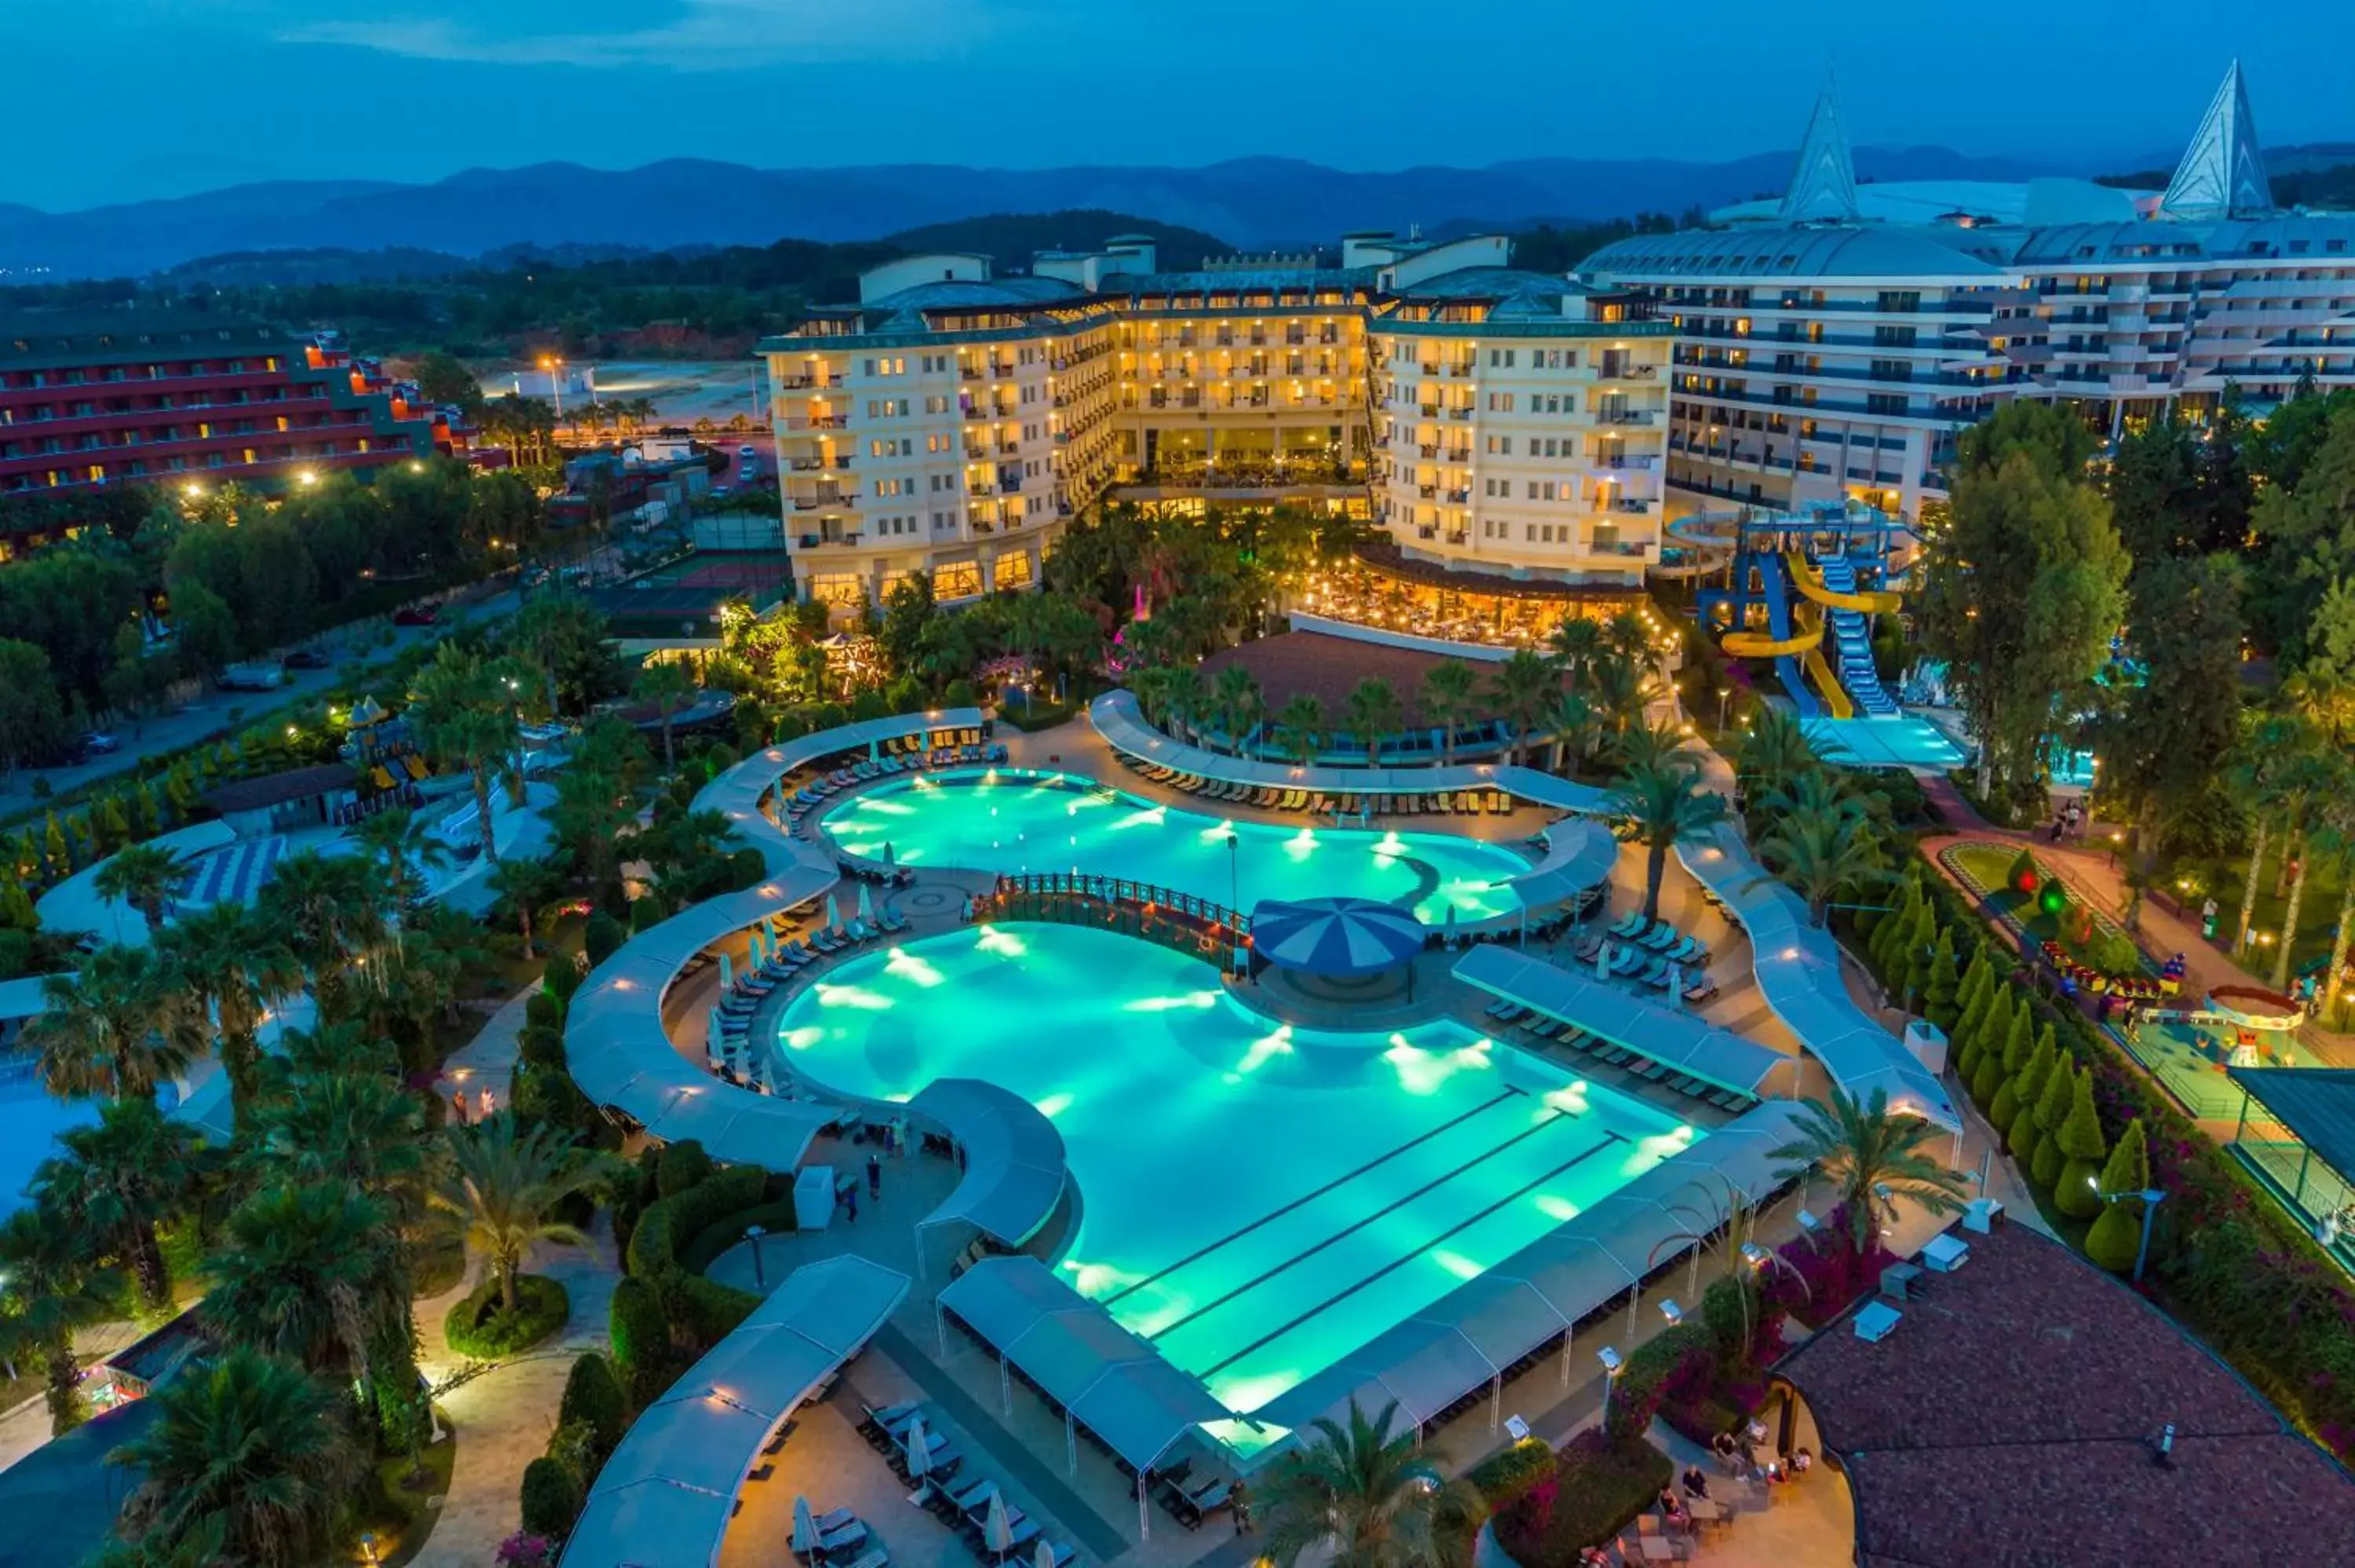 Night, Pool View in Mukarnas Spa & Resort Hotel